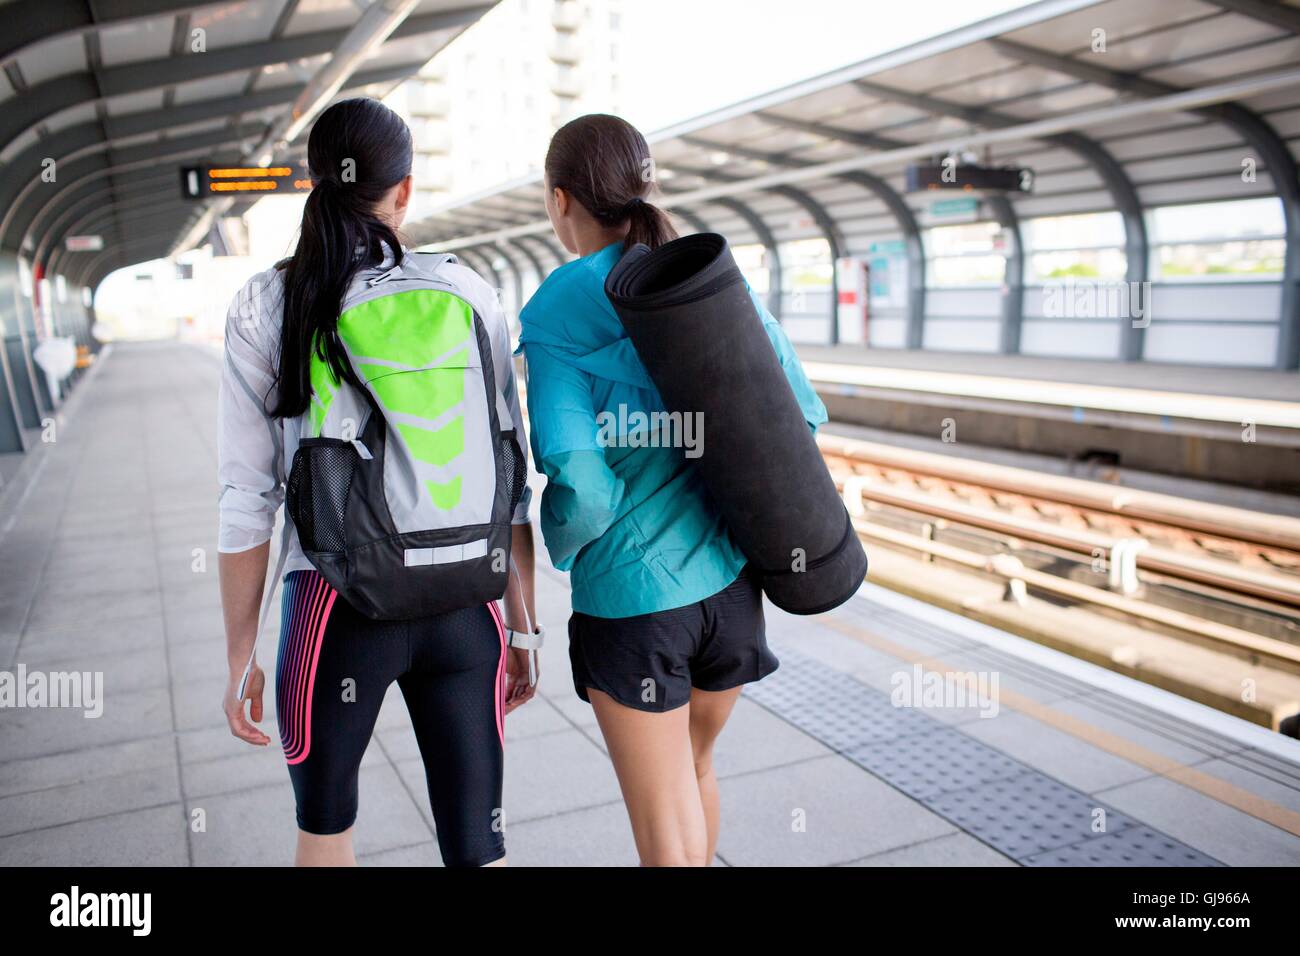 Modelo liberado. Dos mujeres jóvenes con equipamiento deportivo en la plataforma ferroviaria. Foto de stock